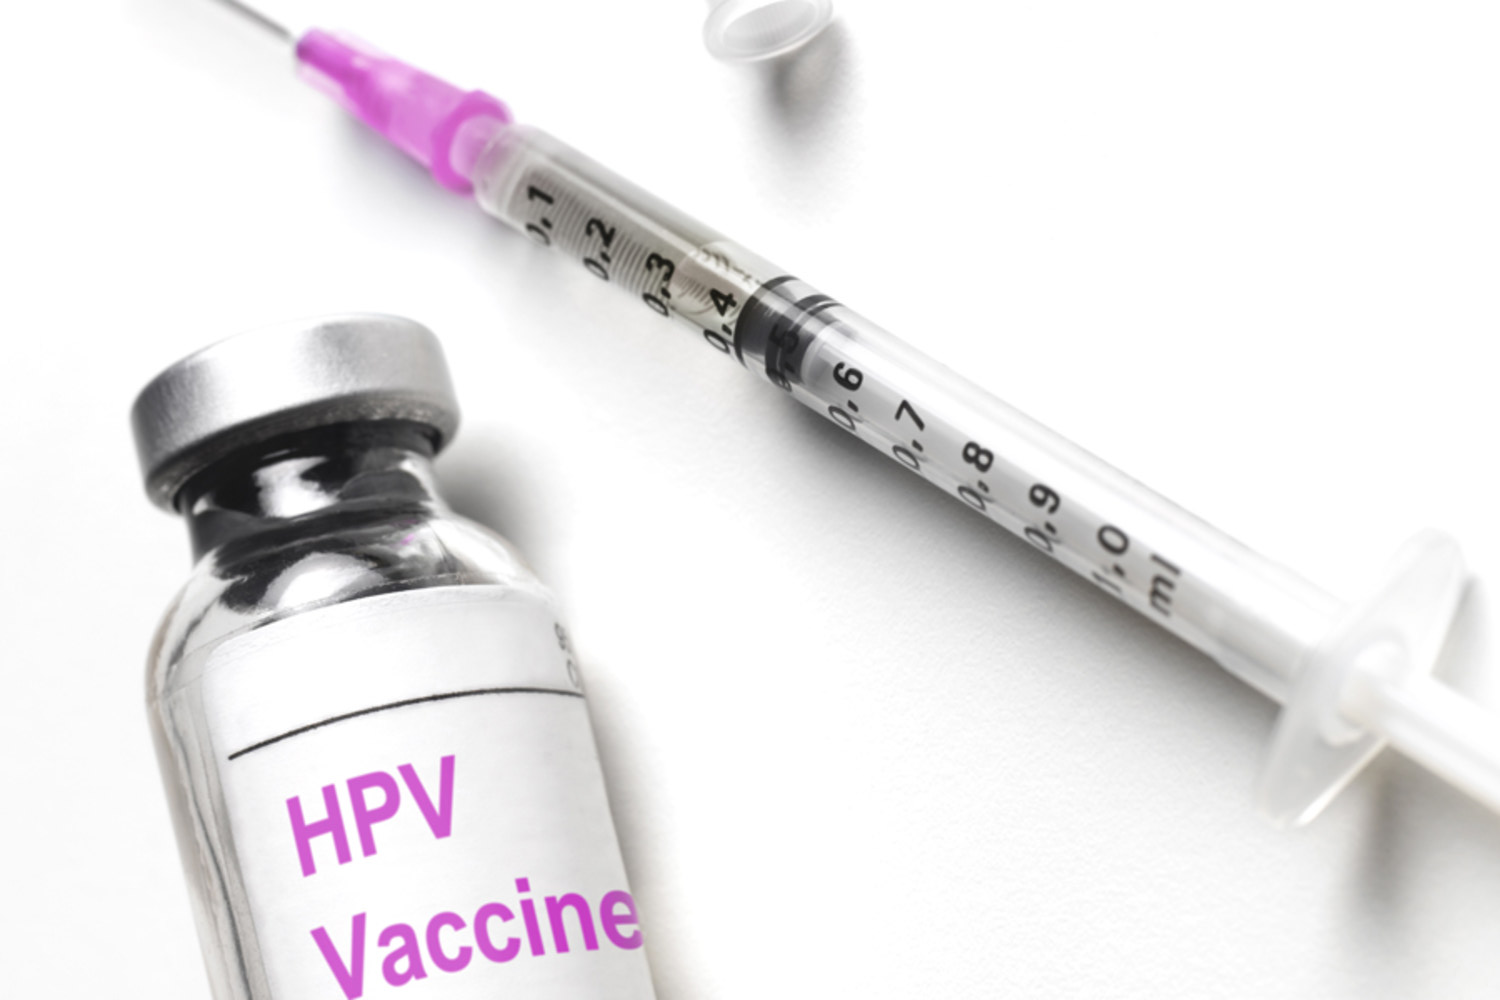   Có thể chỉ cần tiêm một mũi HPV duy nhất để phòng bệnh ung thư cổ tử cung (Ảnh minh họa)  